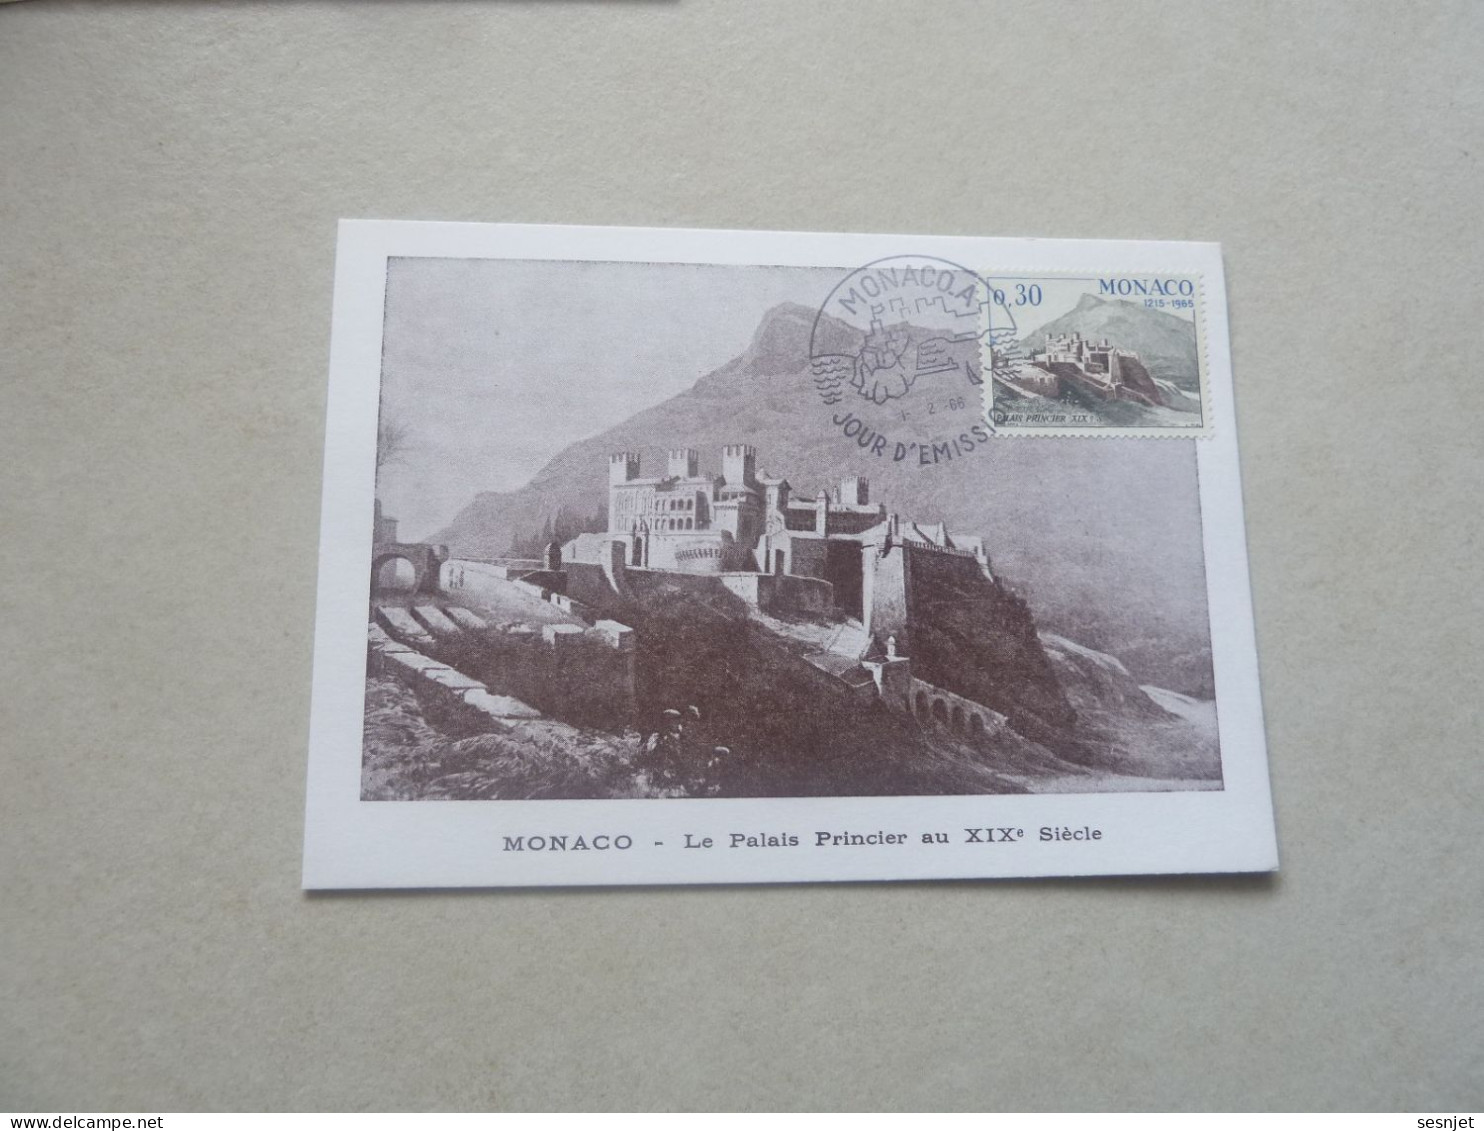 Monaco - Le Palais Au 19ème Siècle - 30c. - Yt 680 - Carte Premier Jour D'Emission - Année 1966 - - Maximumkaarten